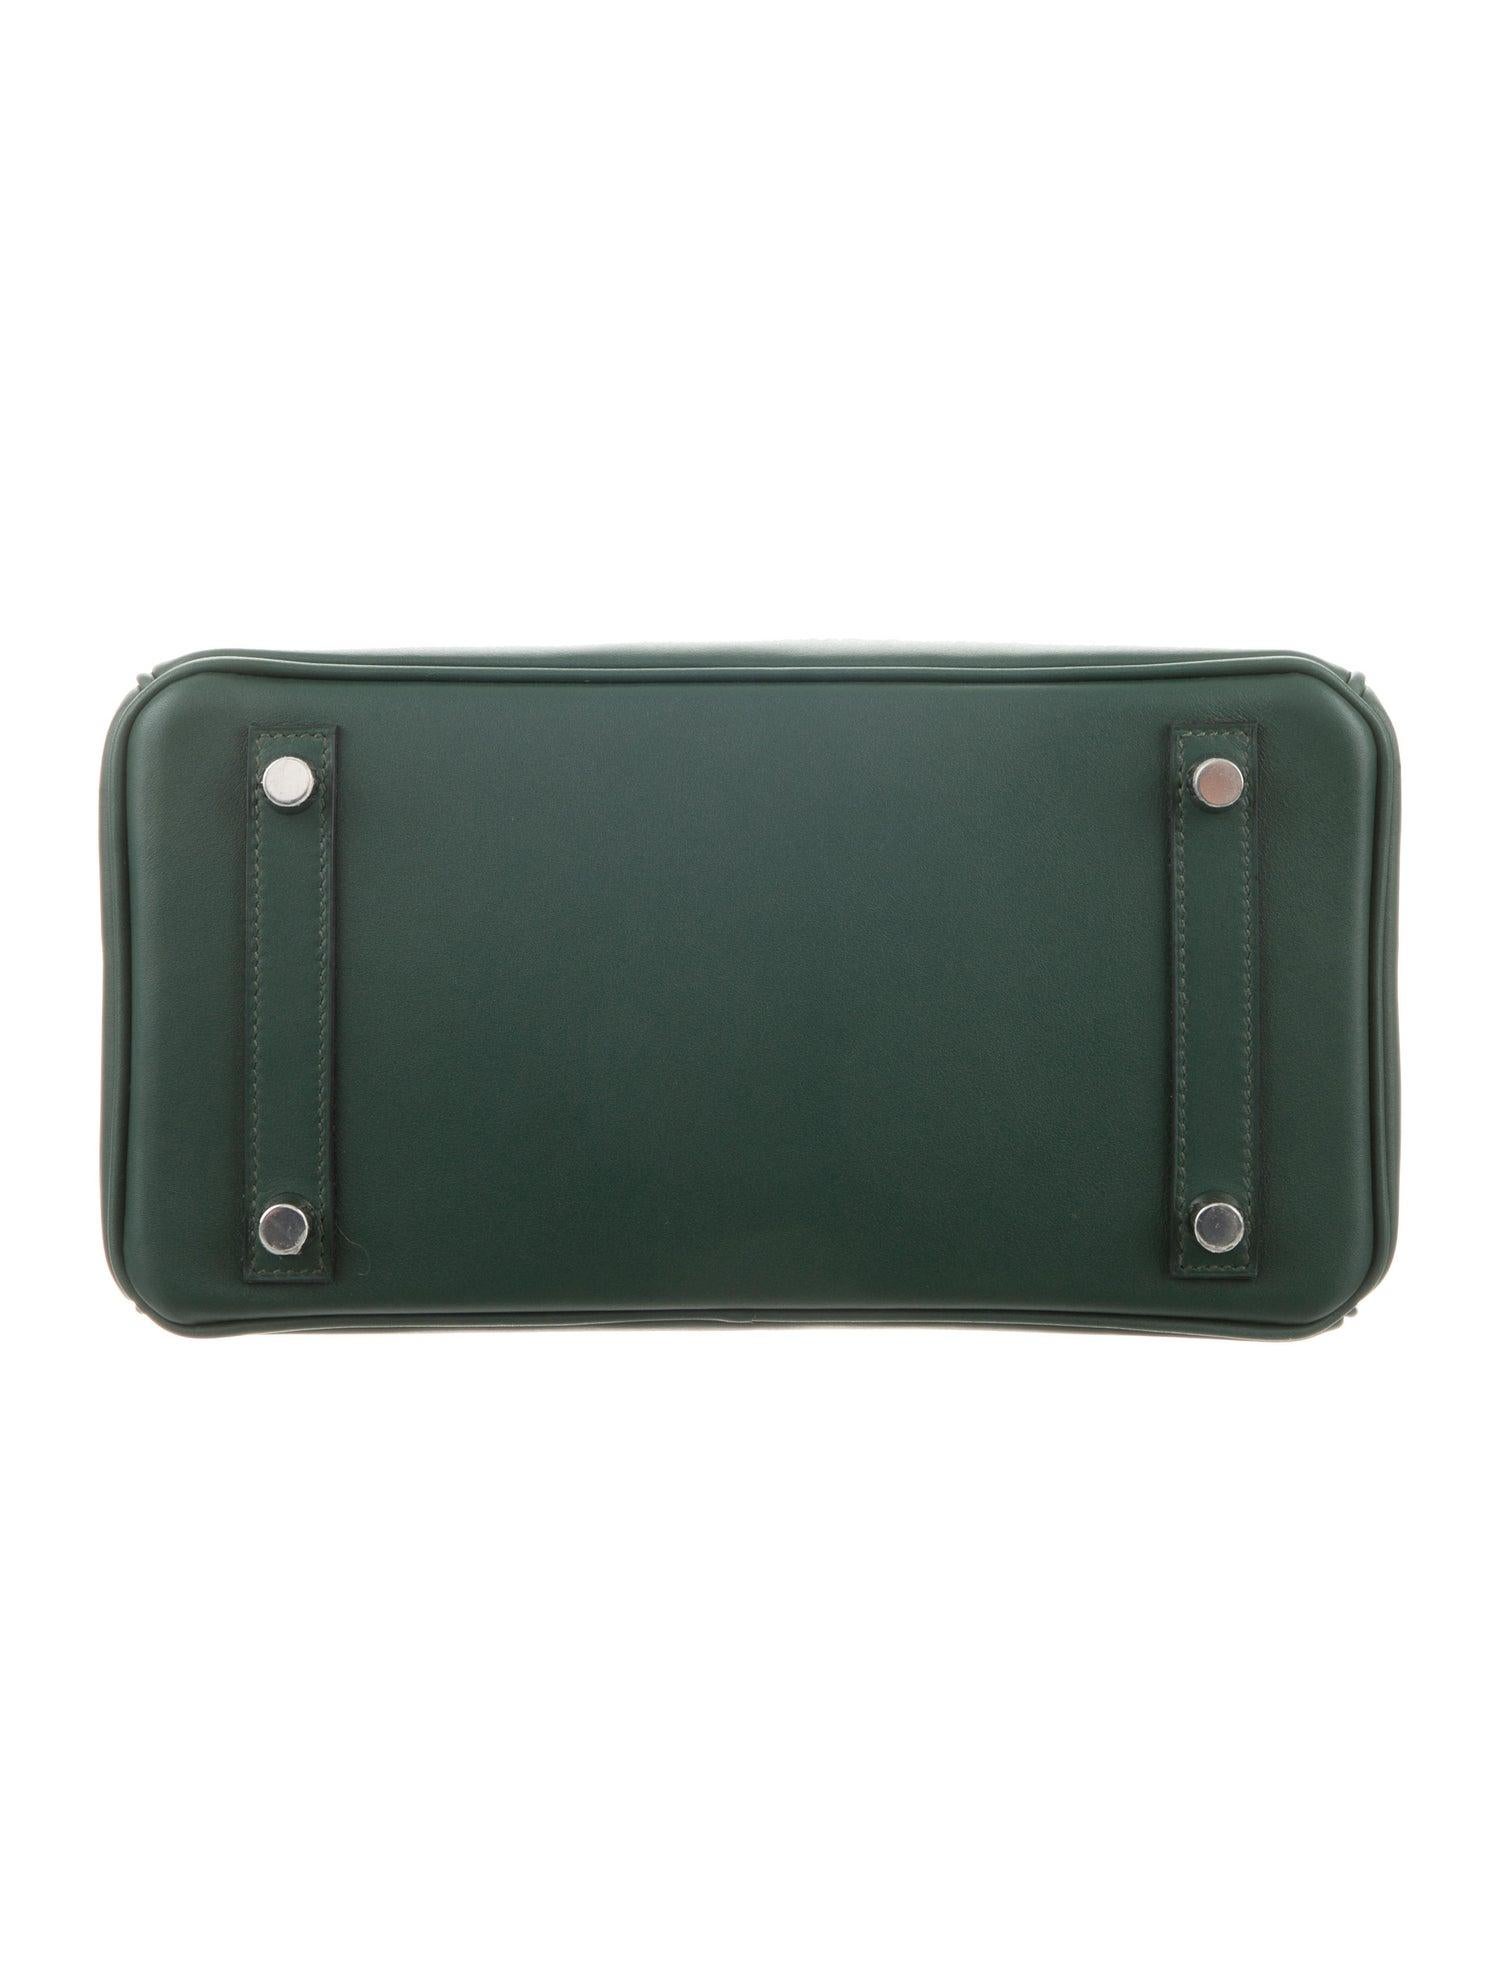 Women's Hermes NEW Birkin 25 Green Leather Top Handle Tote Satchel Shoulder Bag in Box